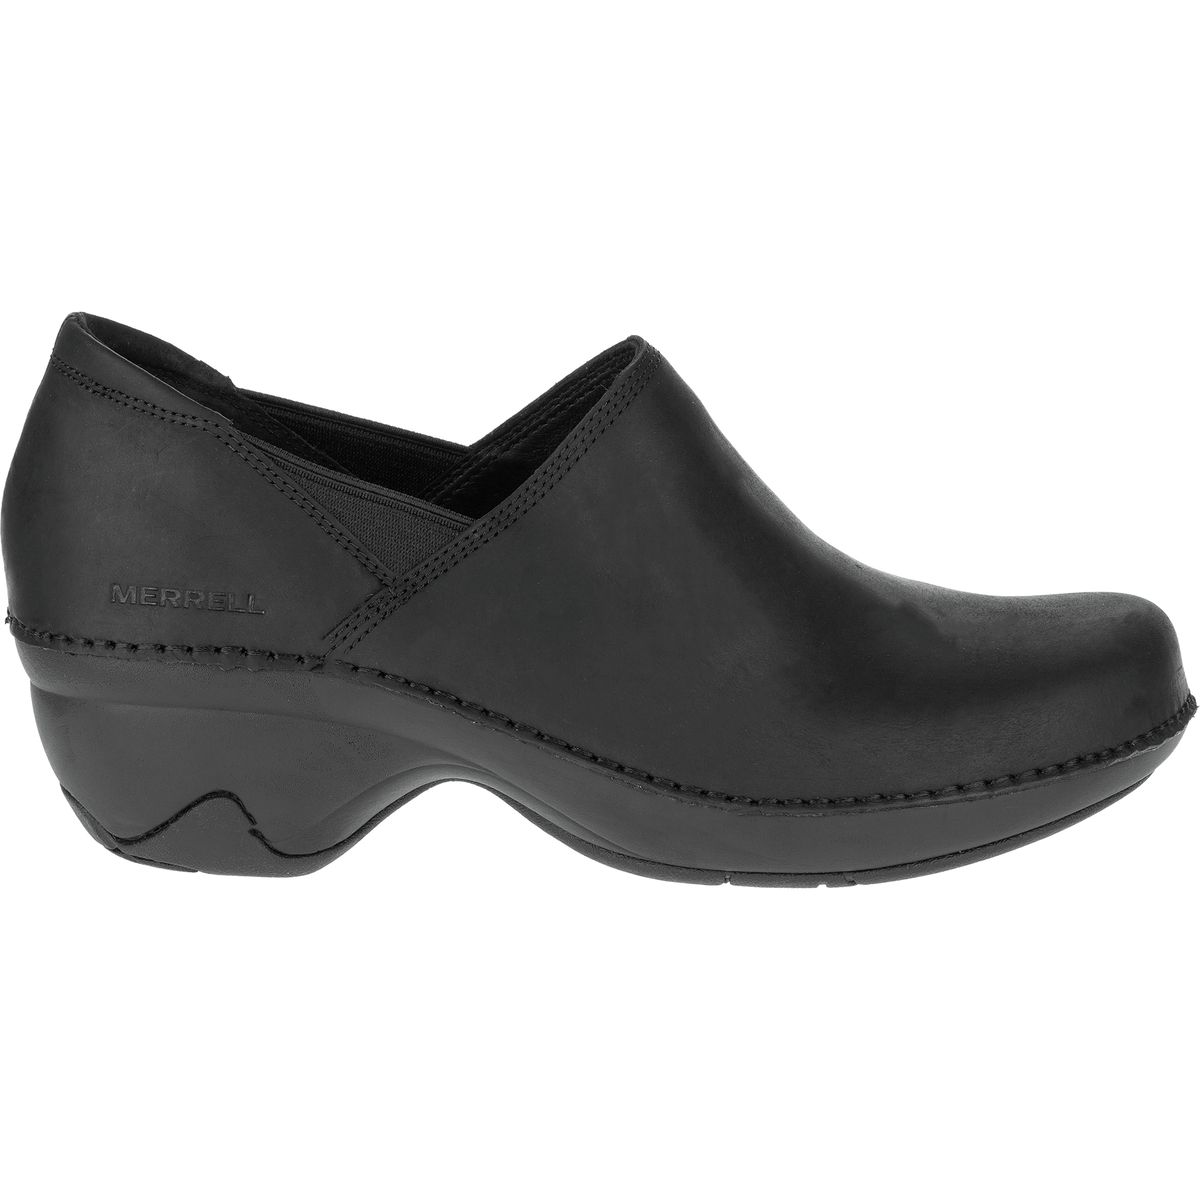 Merrell Emma Leather Shoe - Women's - Footwear